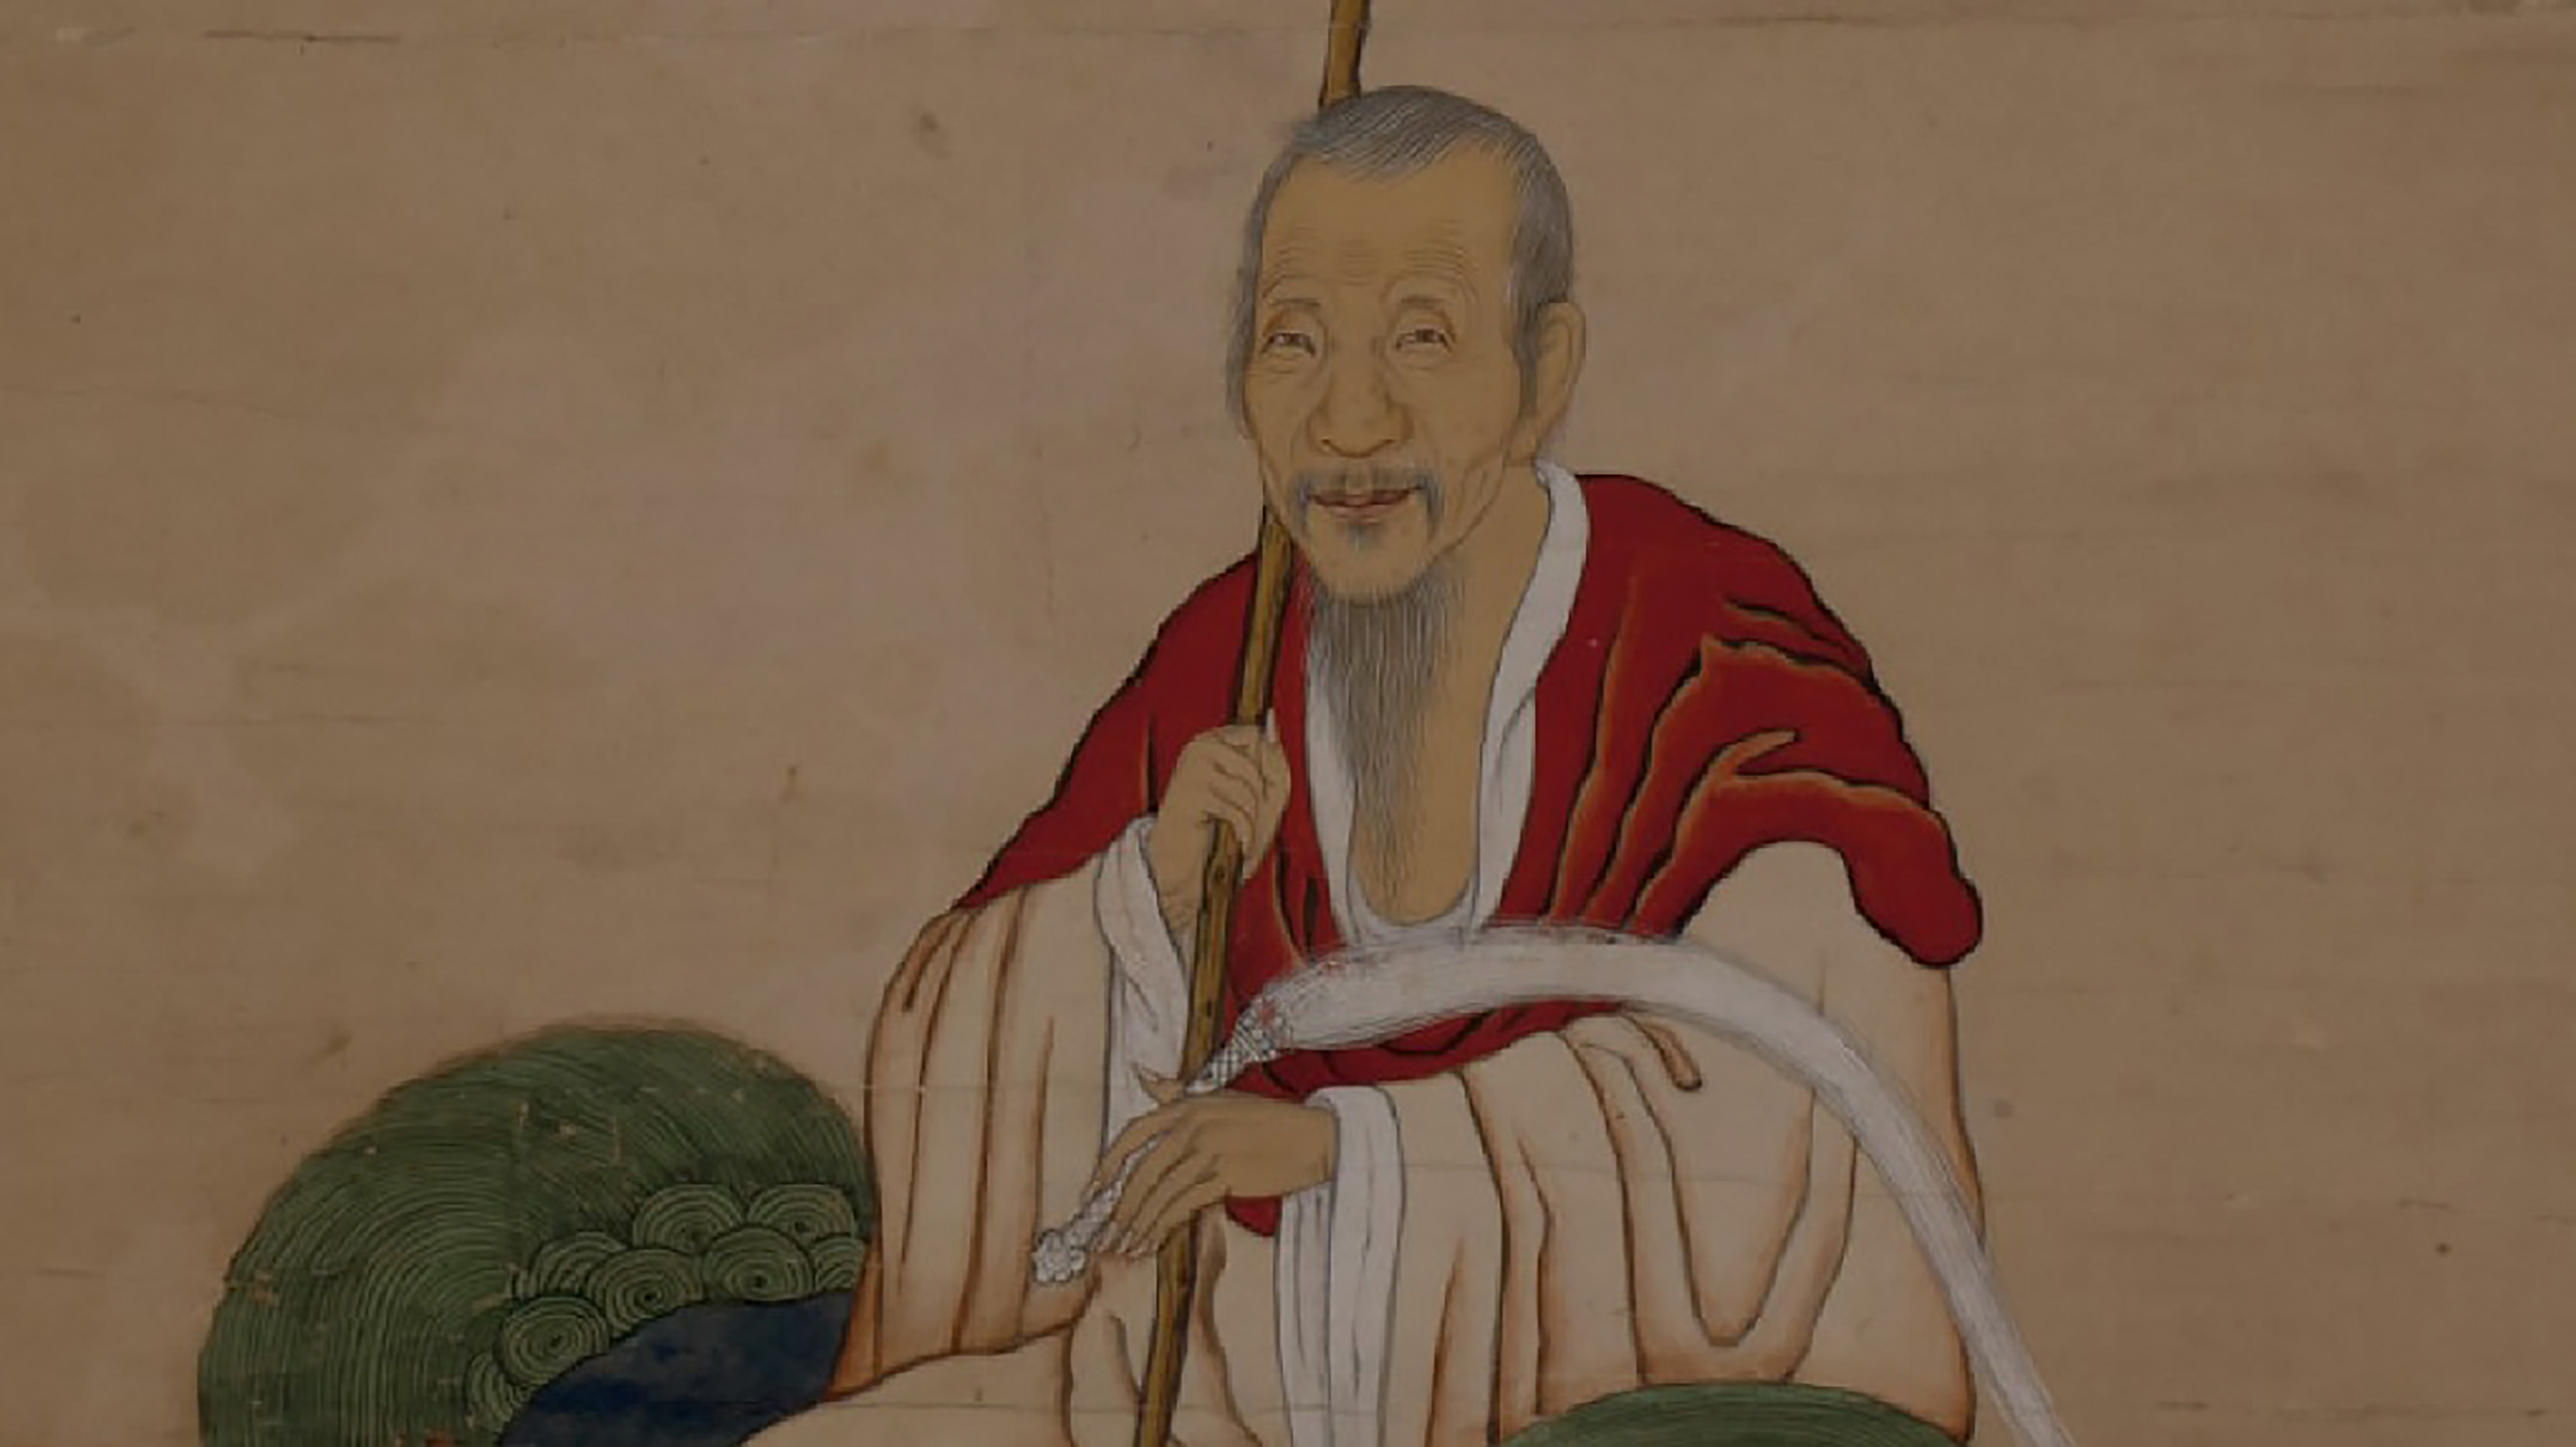 隠元禅師と黄檗文化